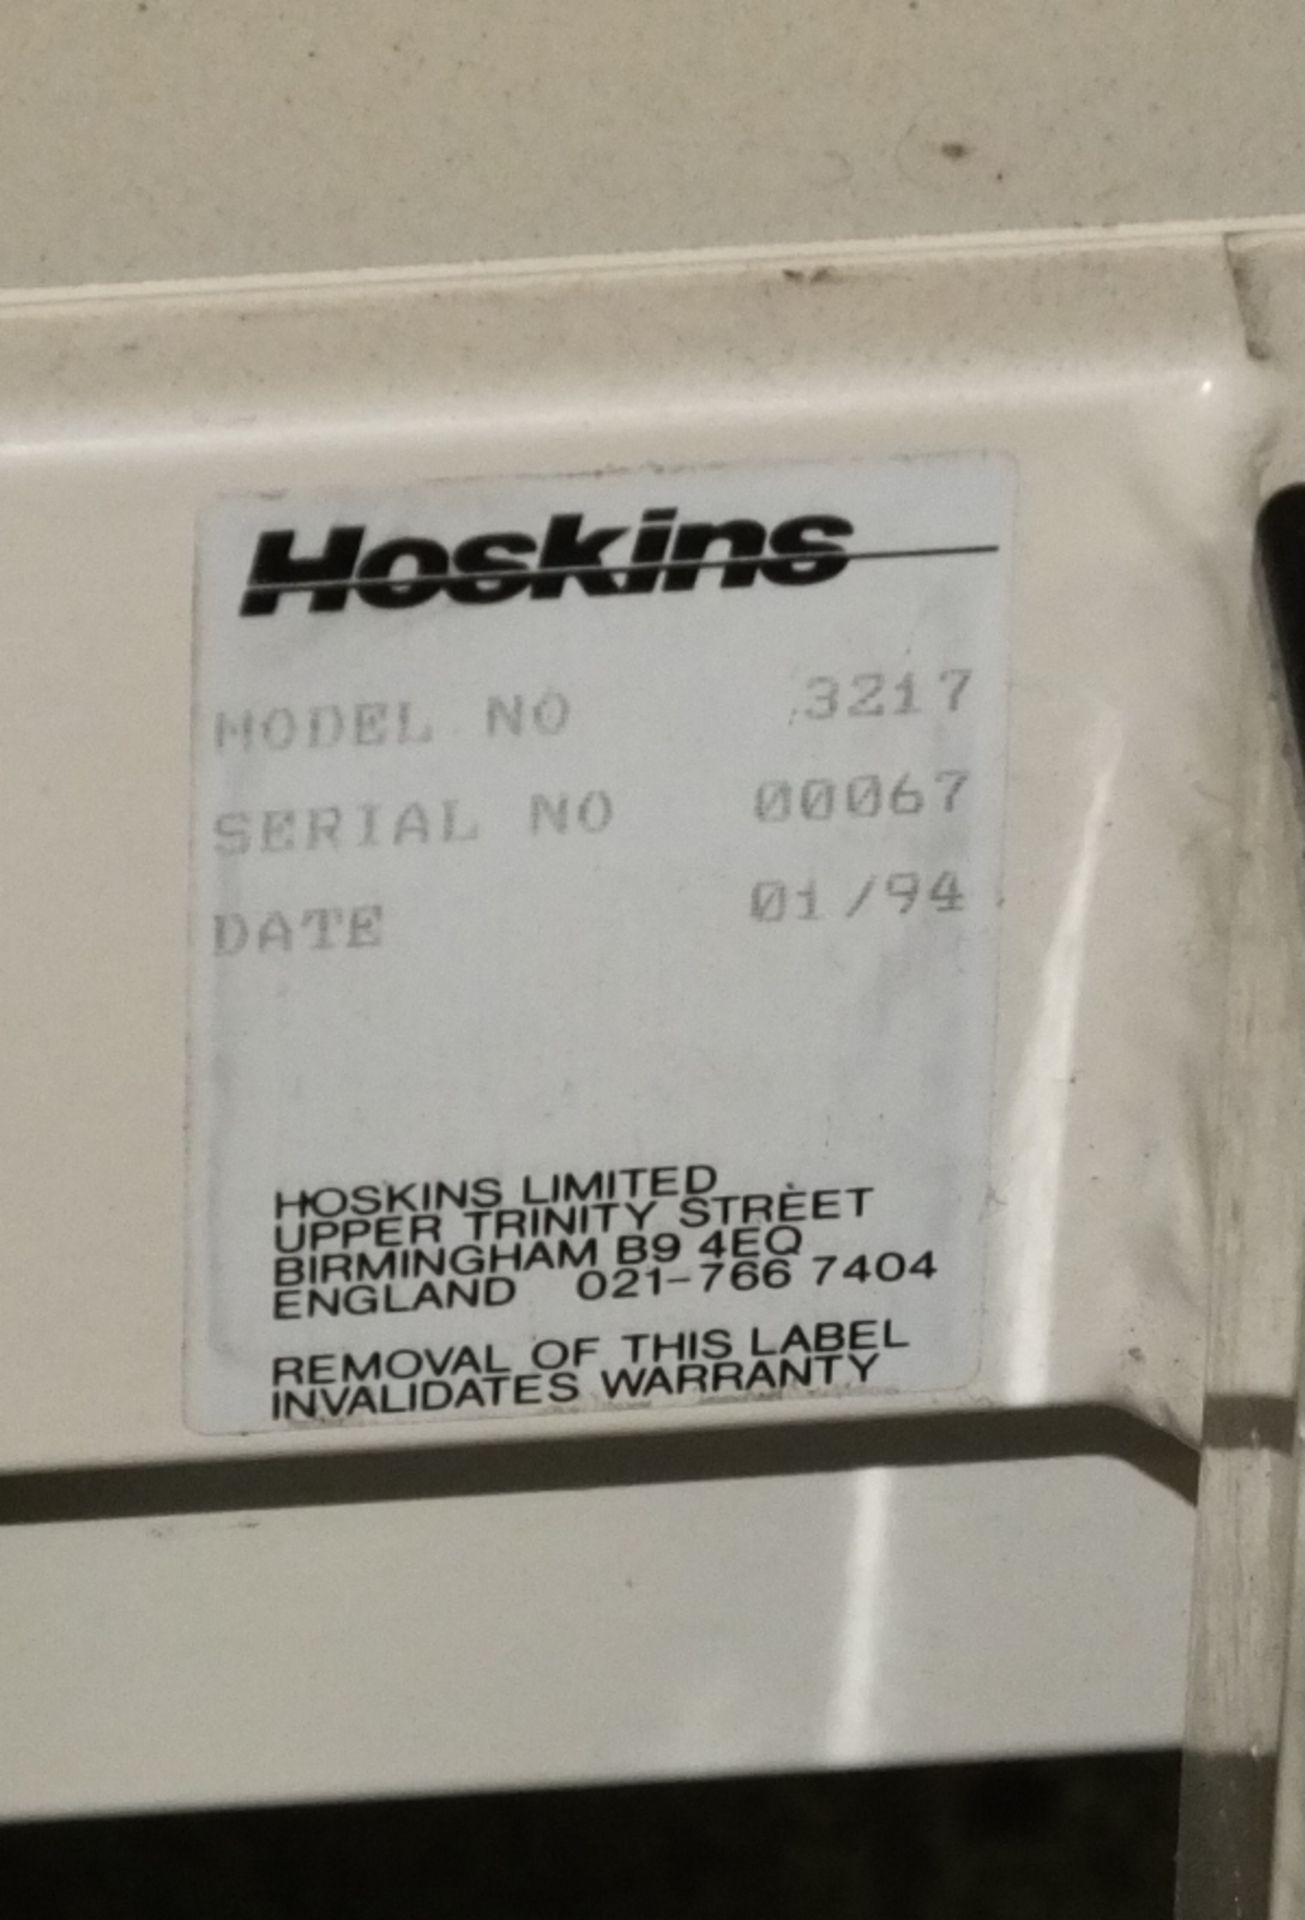 Hoskins Medical Examination bed - Model 3217 - Serial 00067 - DOM 01/94 - Image 3 of 3